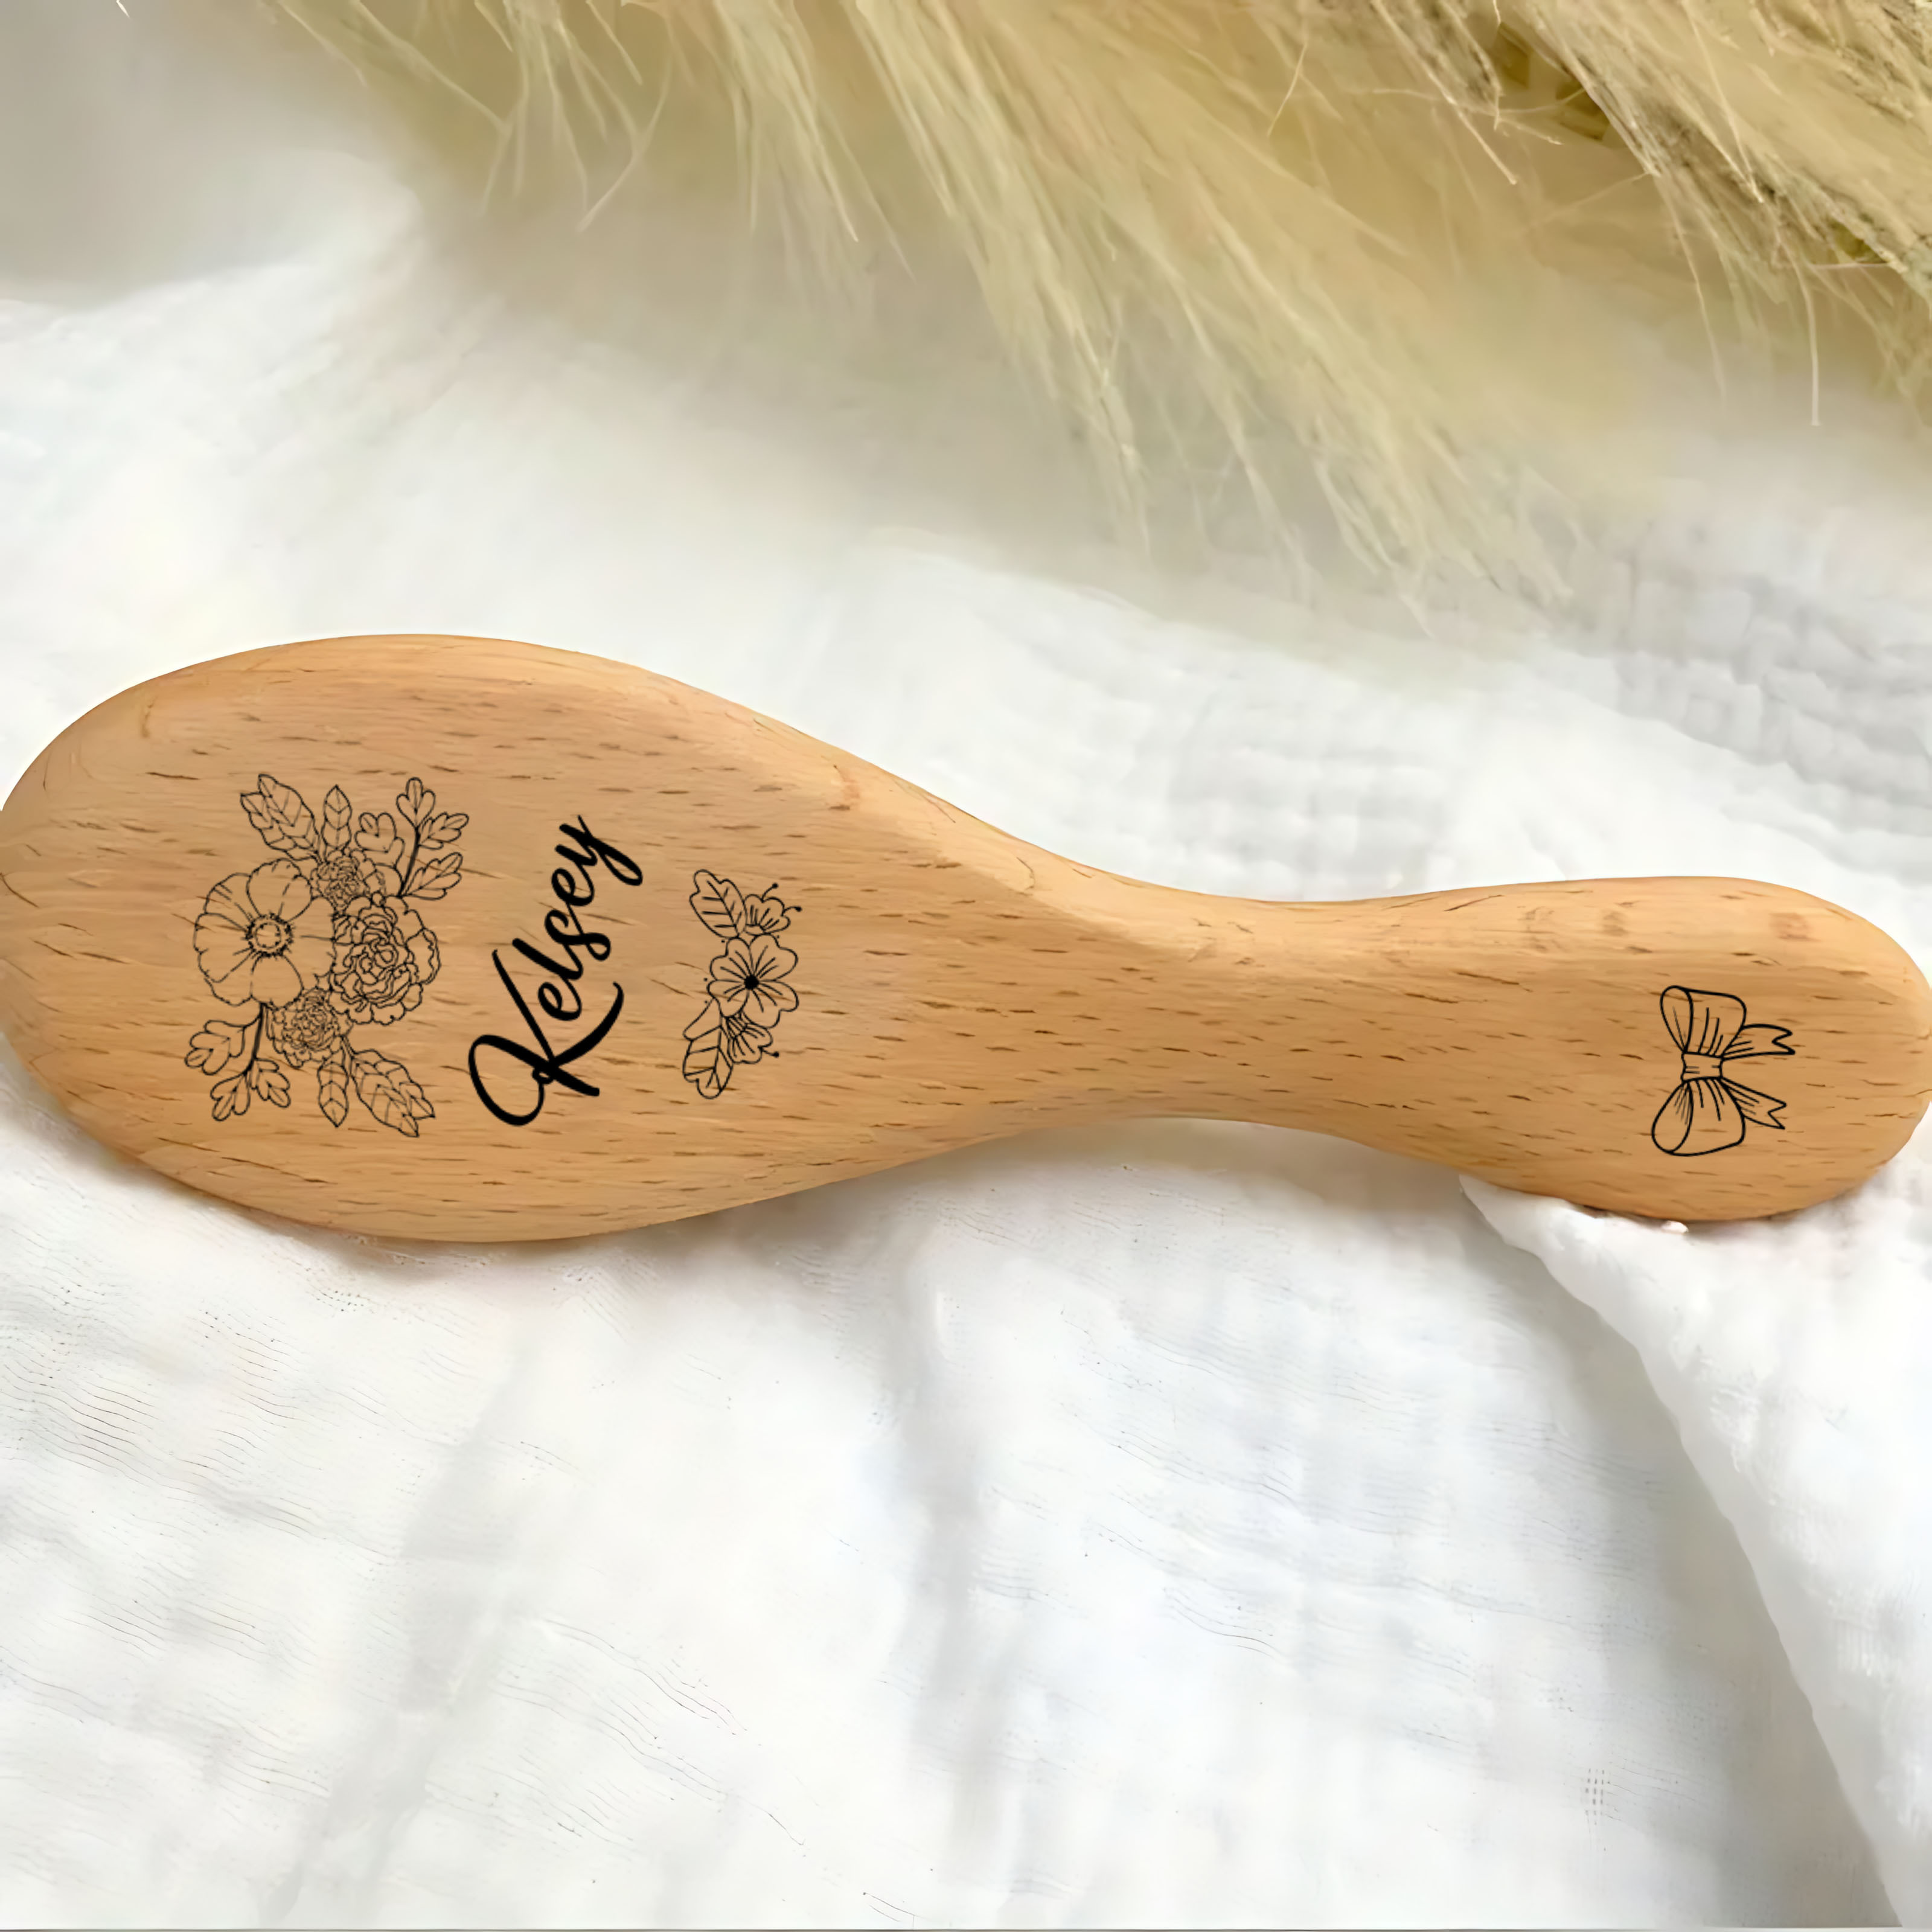 Regalo de bebé personalizado Niñas / Cepillo de pelo de bebé de madera  personalizado / Cepillo de bebé personalizado / Regalo de ducha de bebé  Niñas / Regalo de recuerdo de bebé / -  México